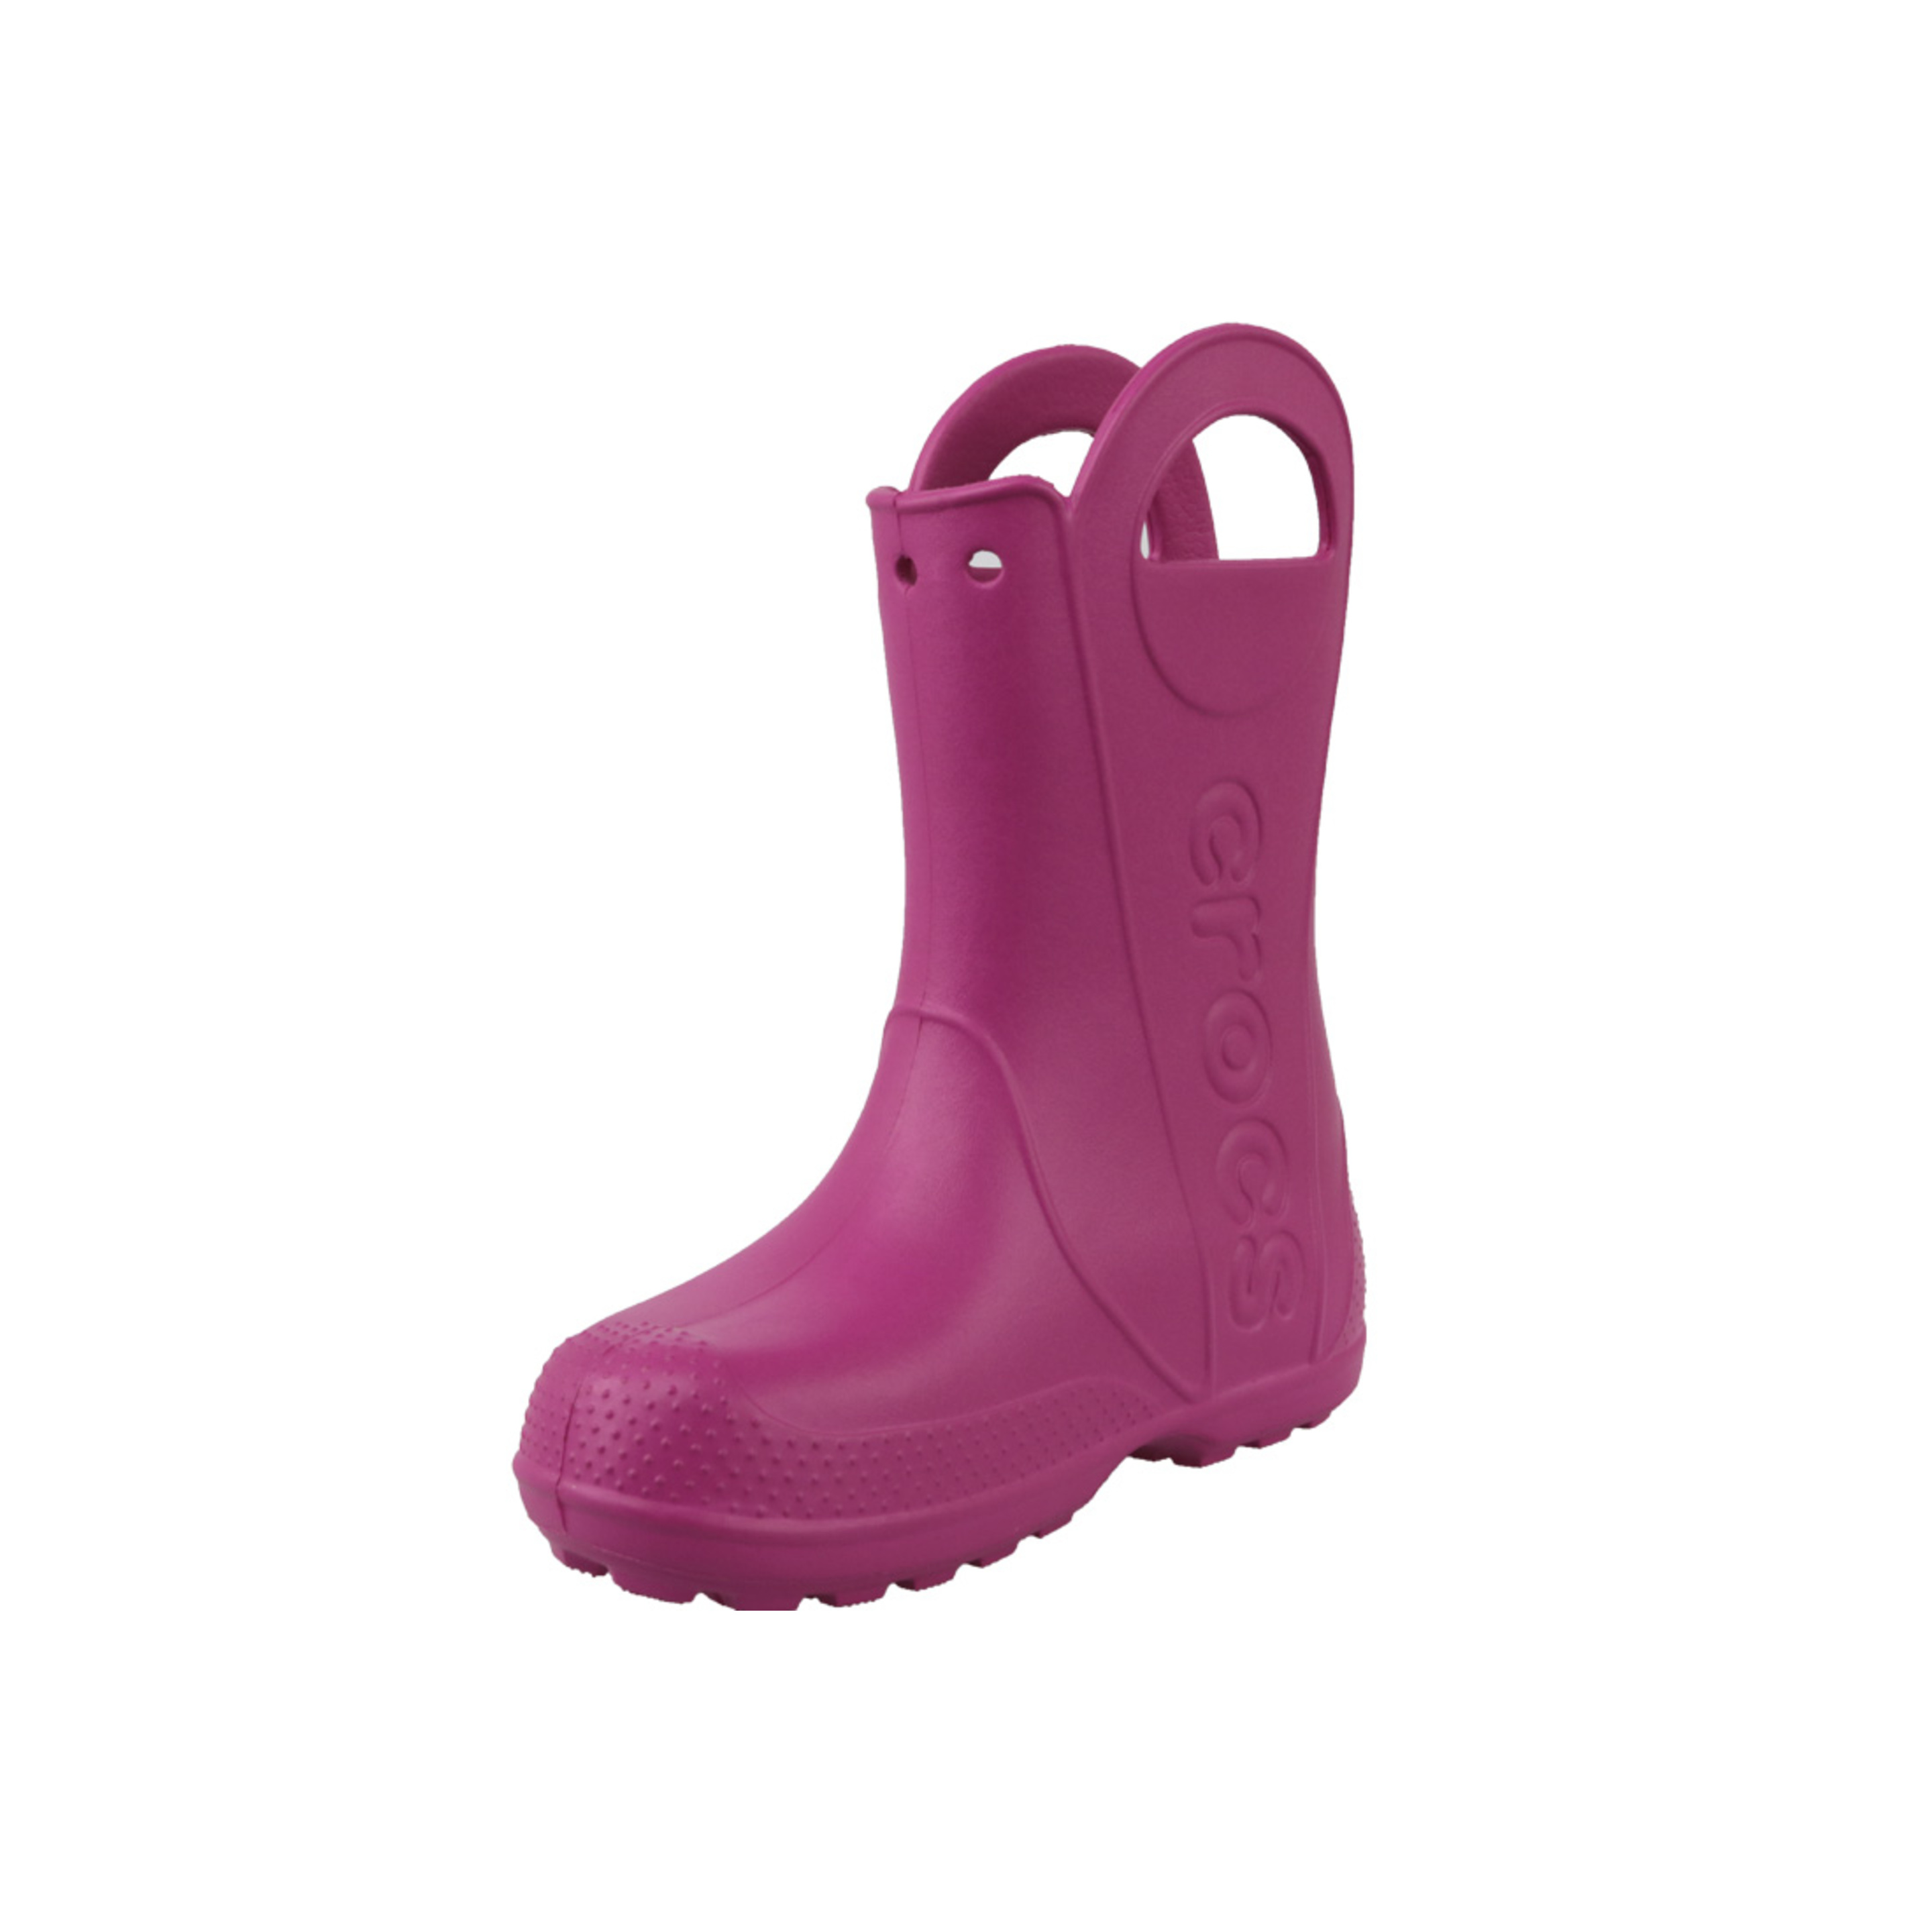 Chanclas Crocs Handle It Rain Boot Kids 12803-6x0 - Rosa - Niño, Rosa, Botas De Goma  MKP